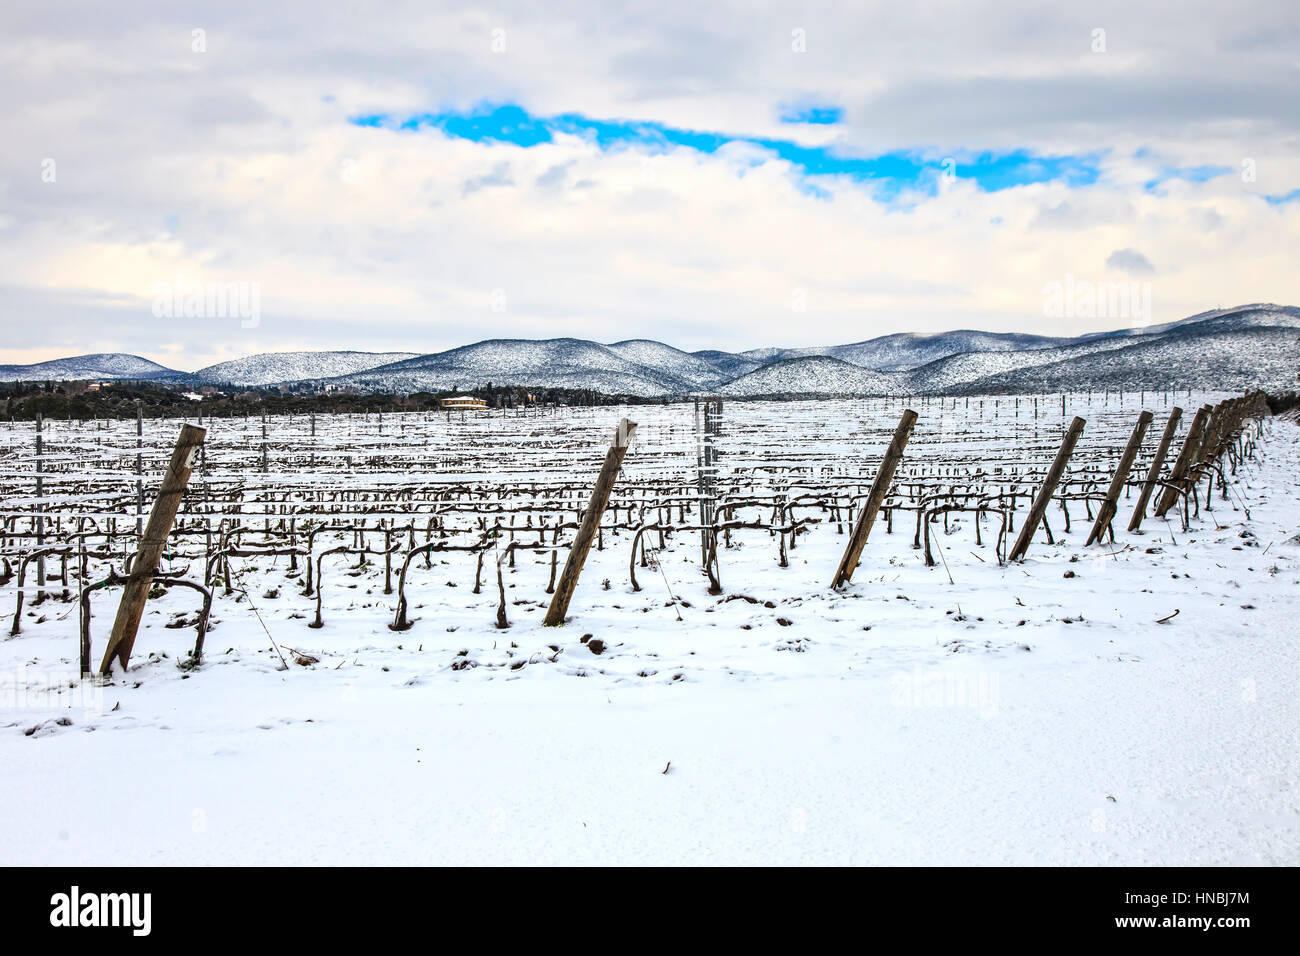 Weinberge-Zeilen im Winter von Schnee bedeckt. Chianti-Landschaft, Florenz, Toskana, Italien Stockfoto